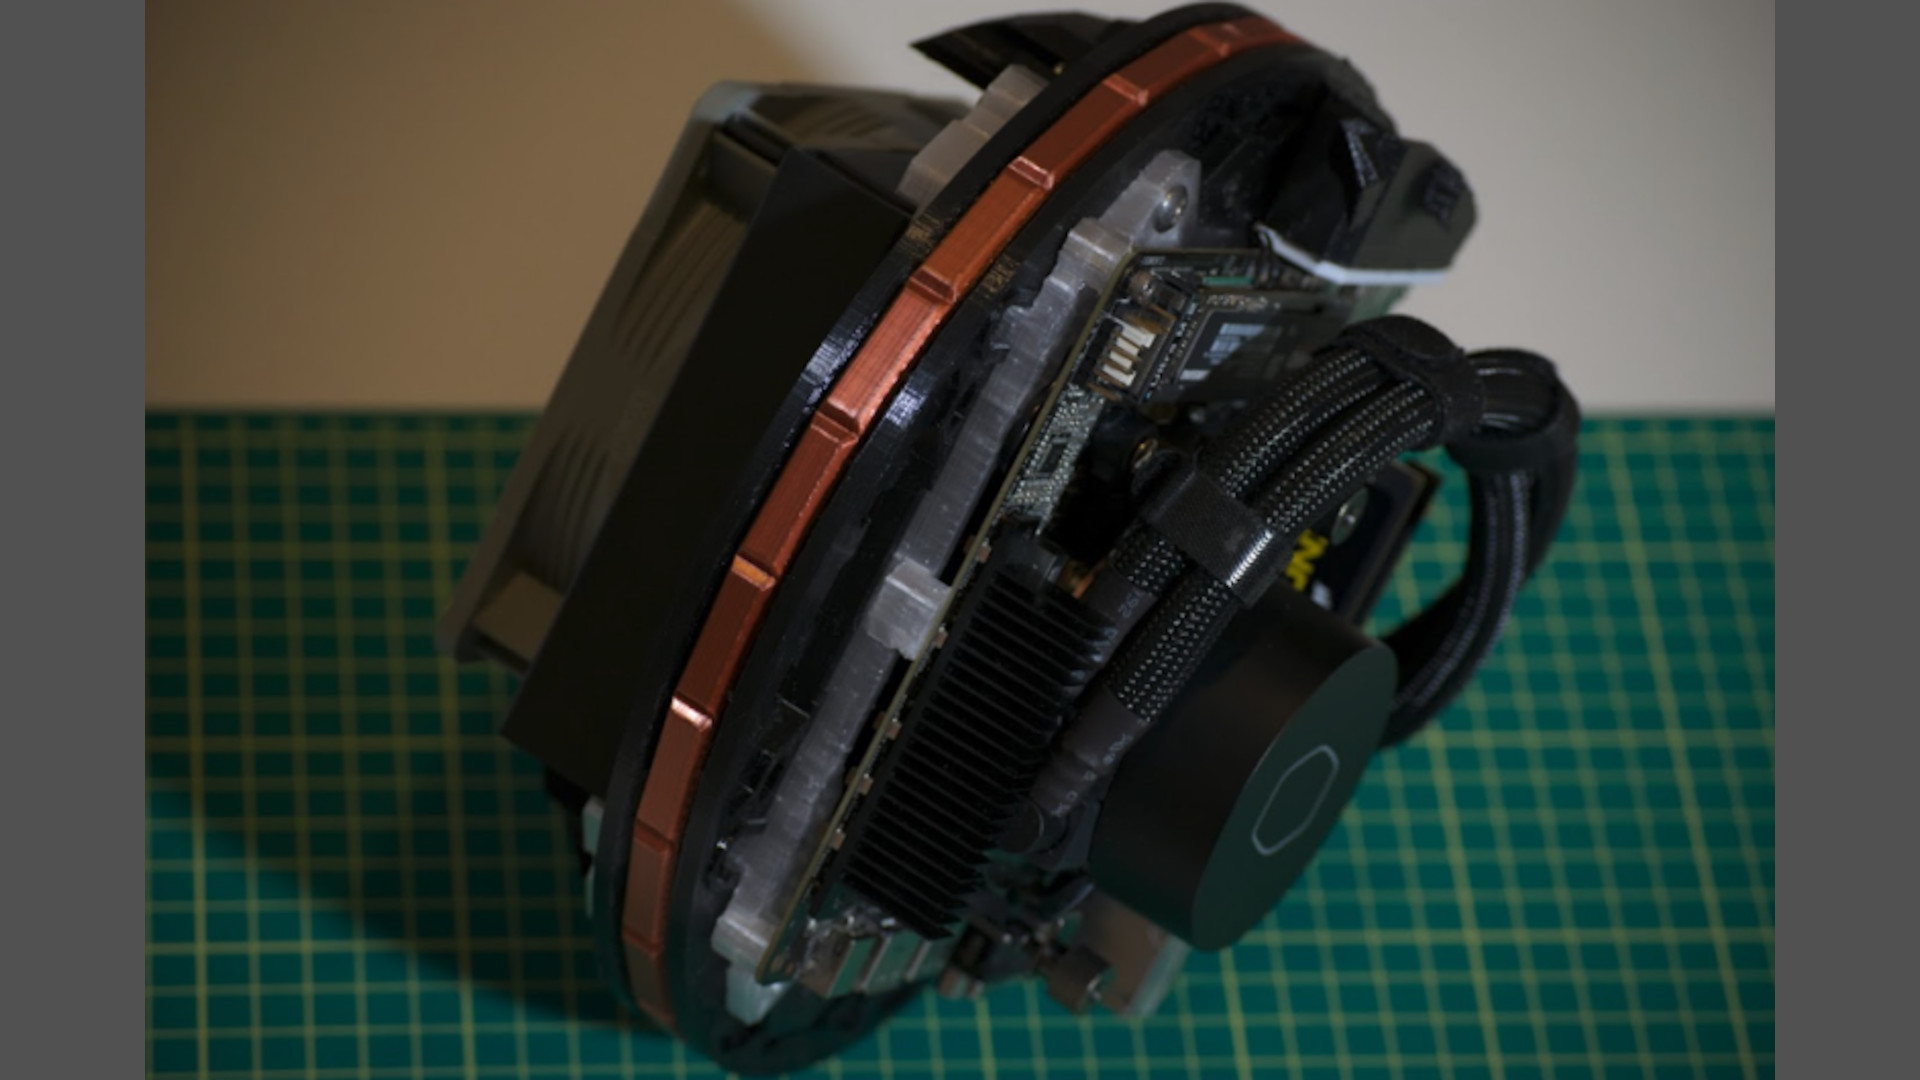 L'intérieur du minuscule boîtier PC imprimé en 3D avec son AIO